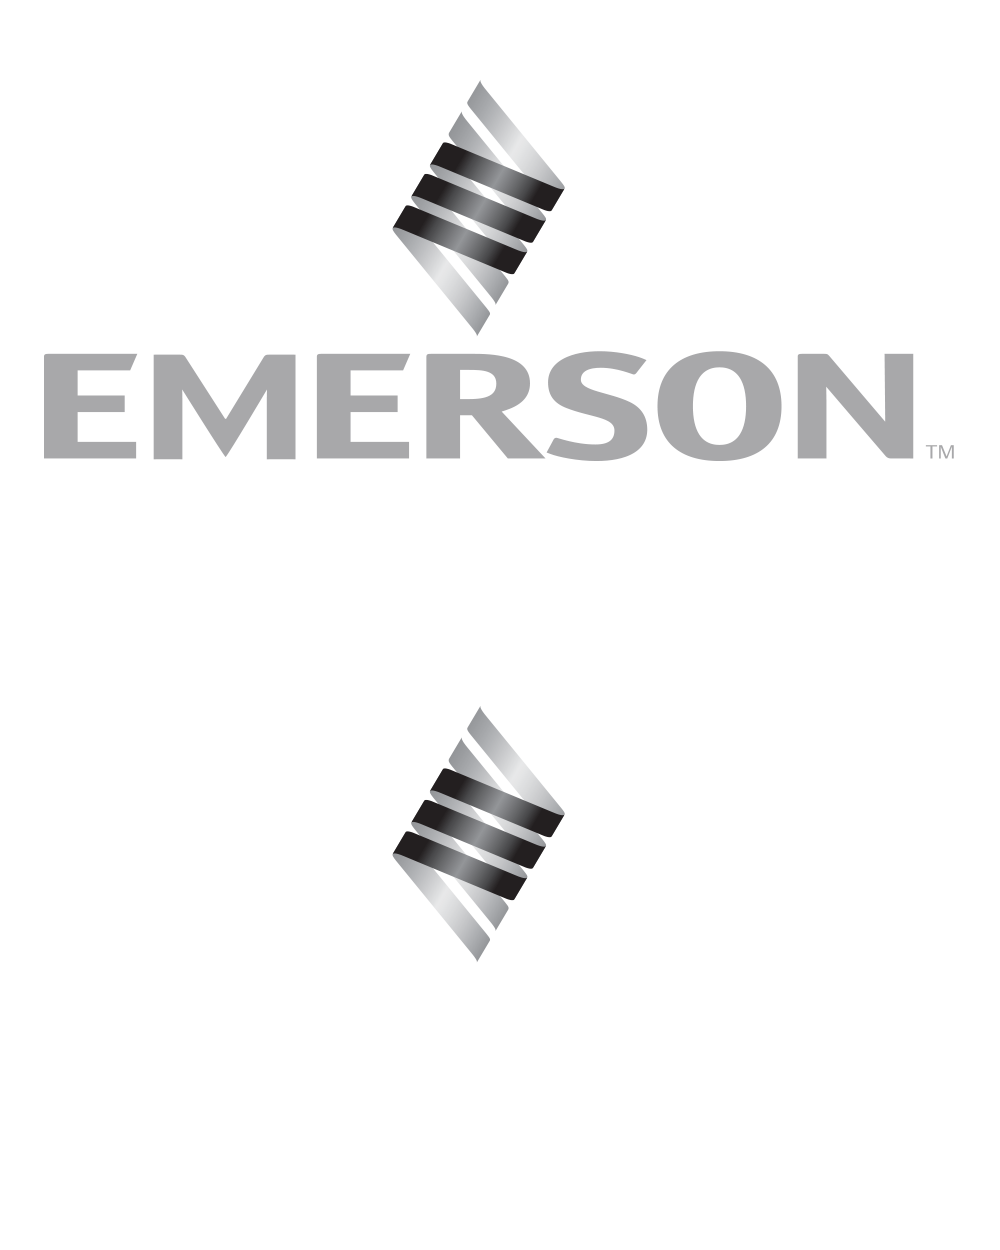 Emerson LOGO * Create Custom Emerson logo * Friday STYLE *